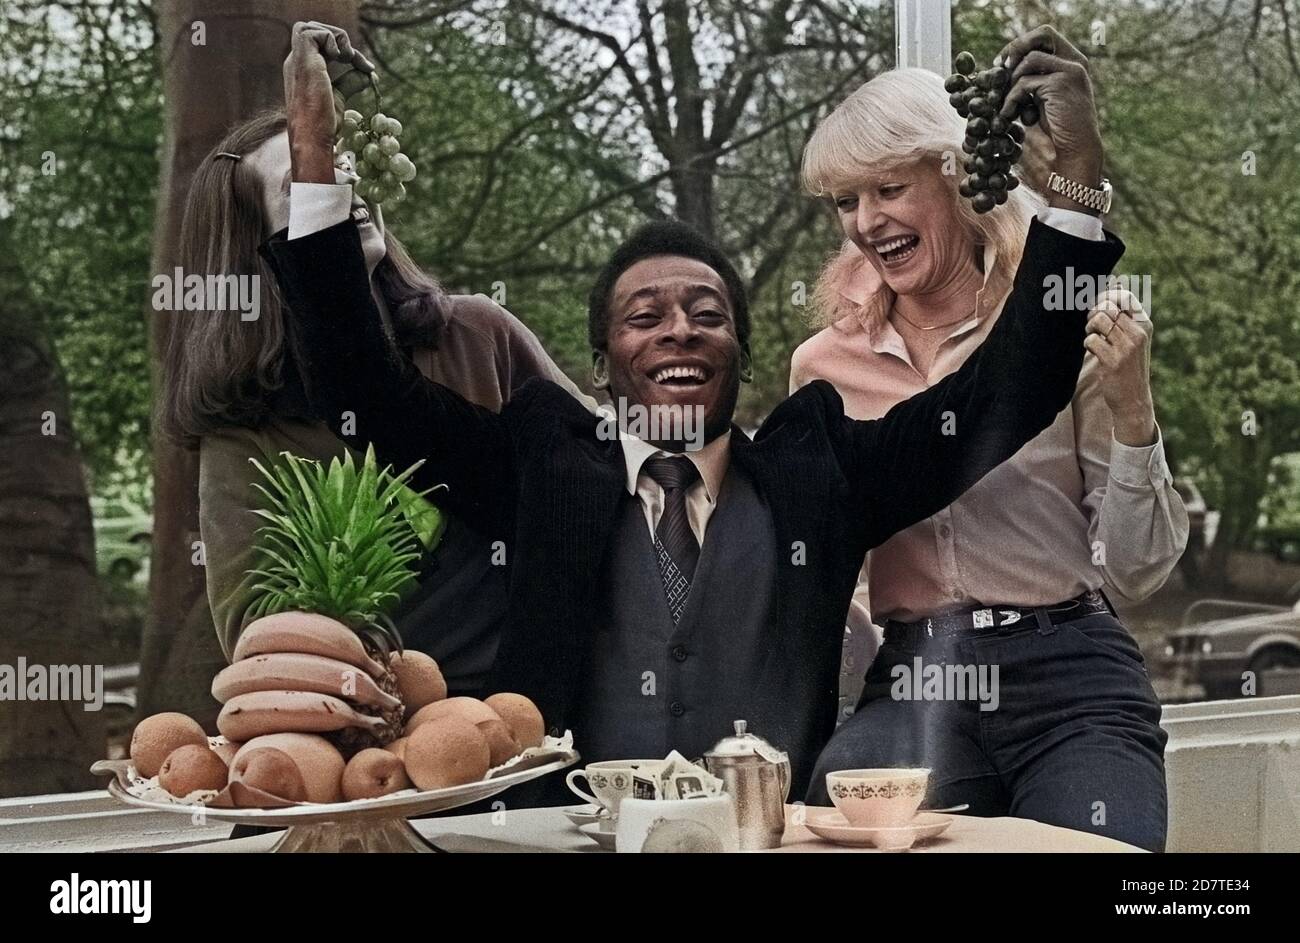 Pele, brasilianischer Fußballspieler, mit zwei Damen beim Frühstücksbuffett in Hamburg, Deutschland 1981. Brazilian football player Pele with two ladies at the breakfast buffet in Hamburg, Germany 1981. Stock Photo